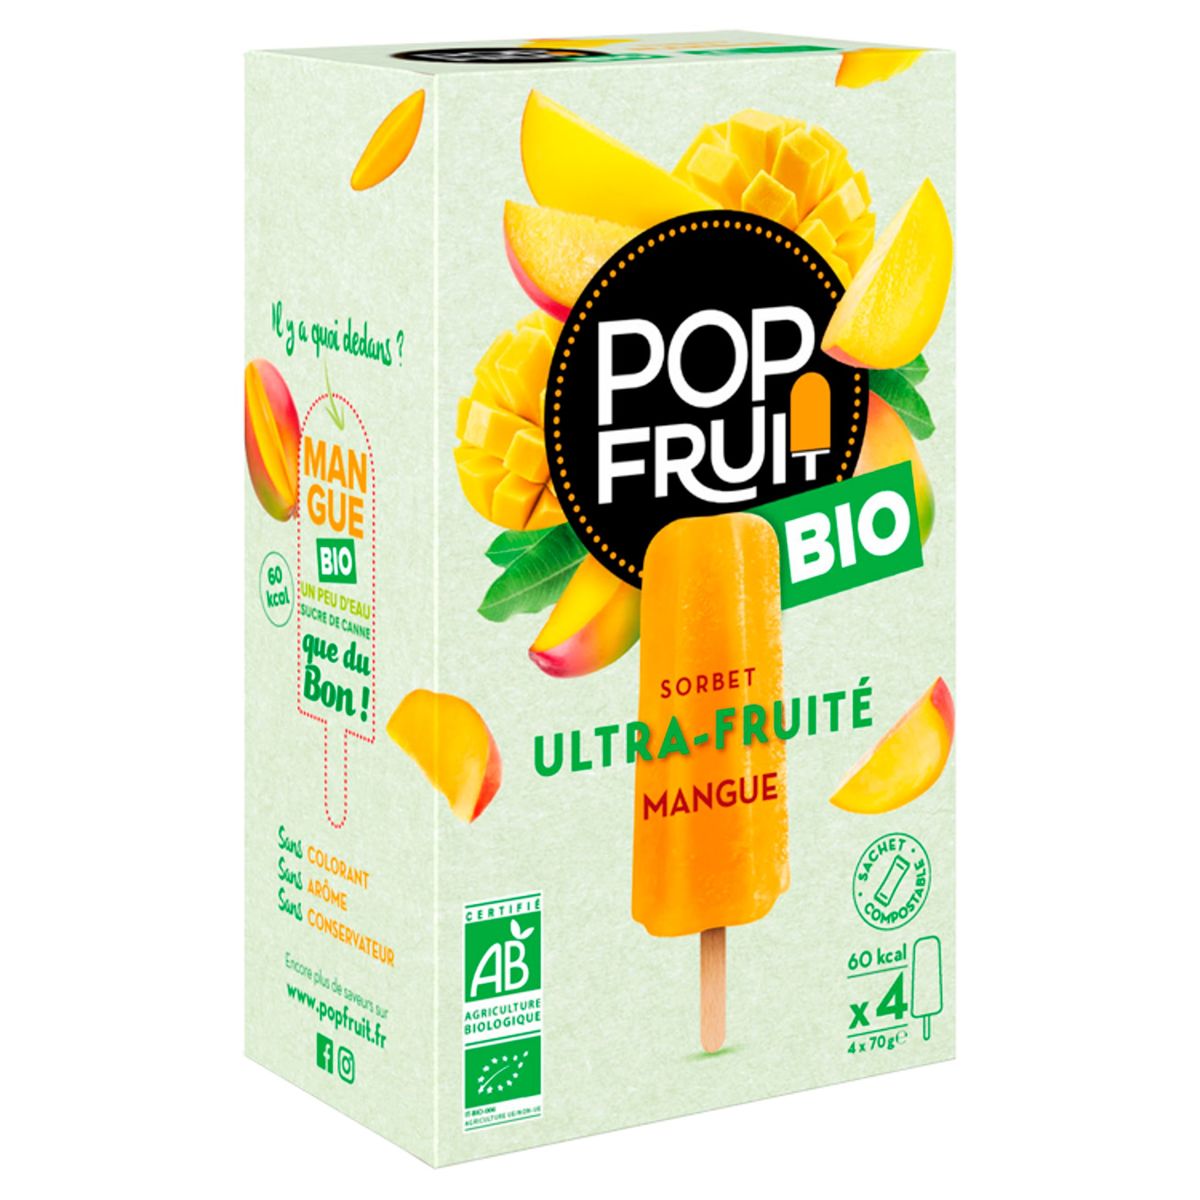 Pop Fruit Bio Organic Sorbet Ultra-Fruité Mangue 4 x 70 g